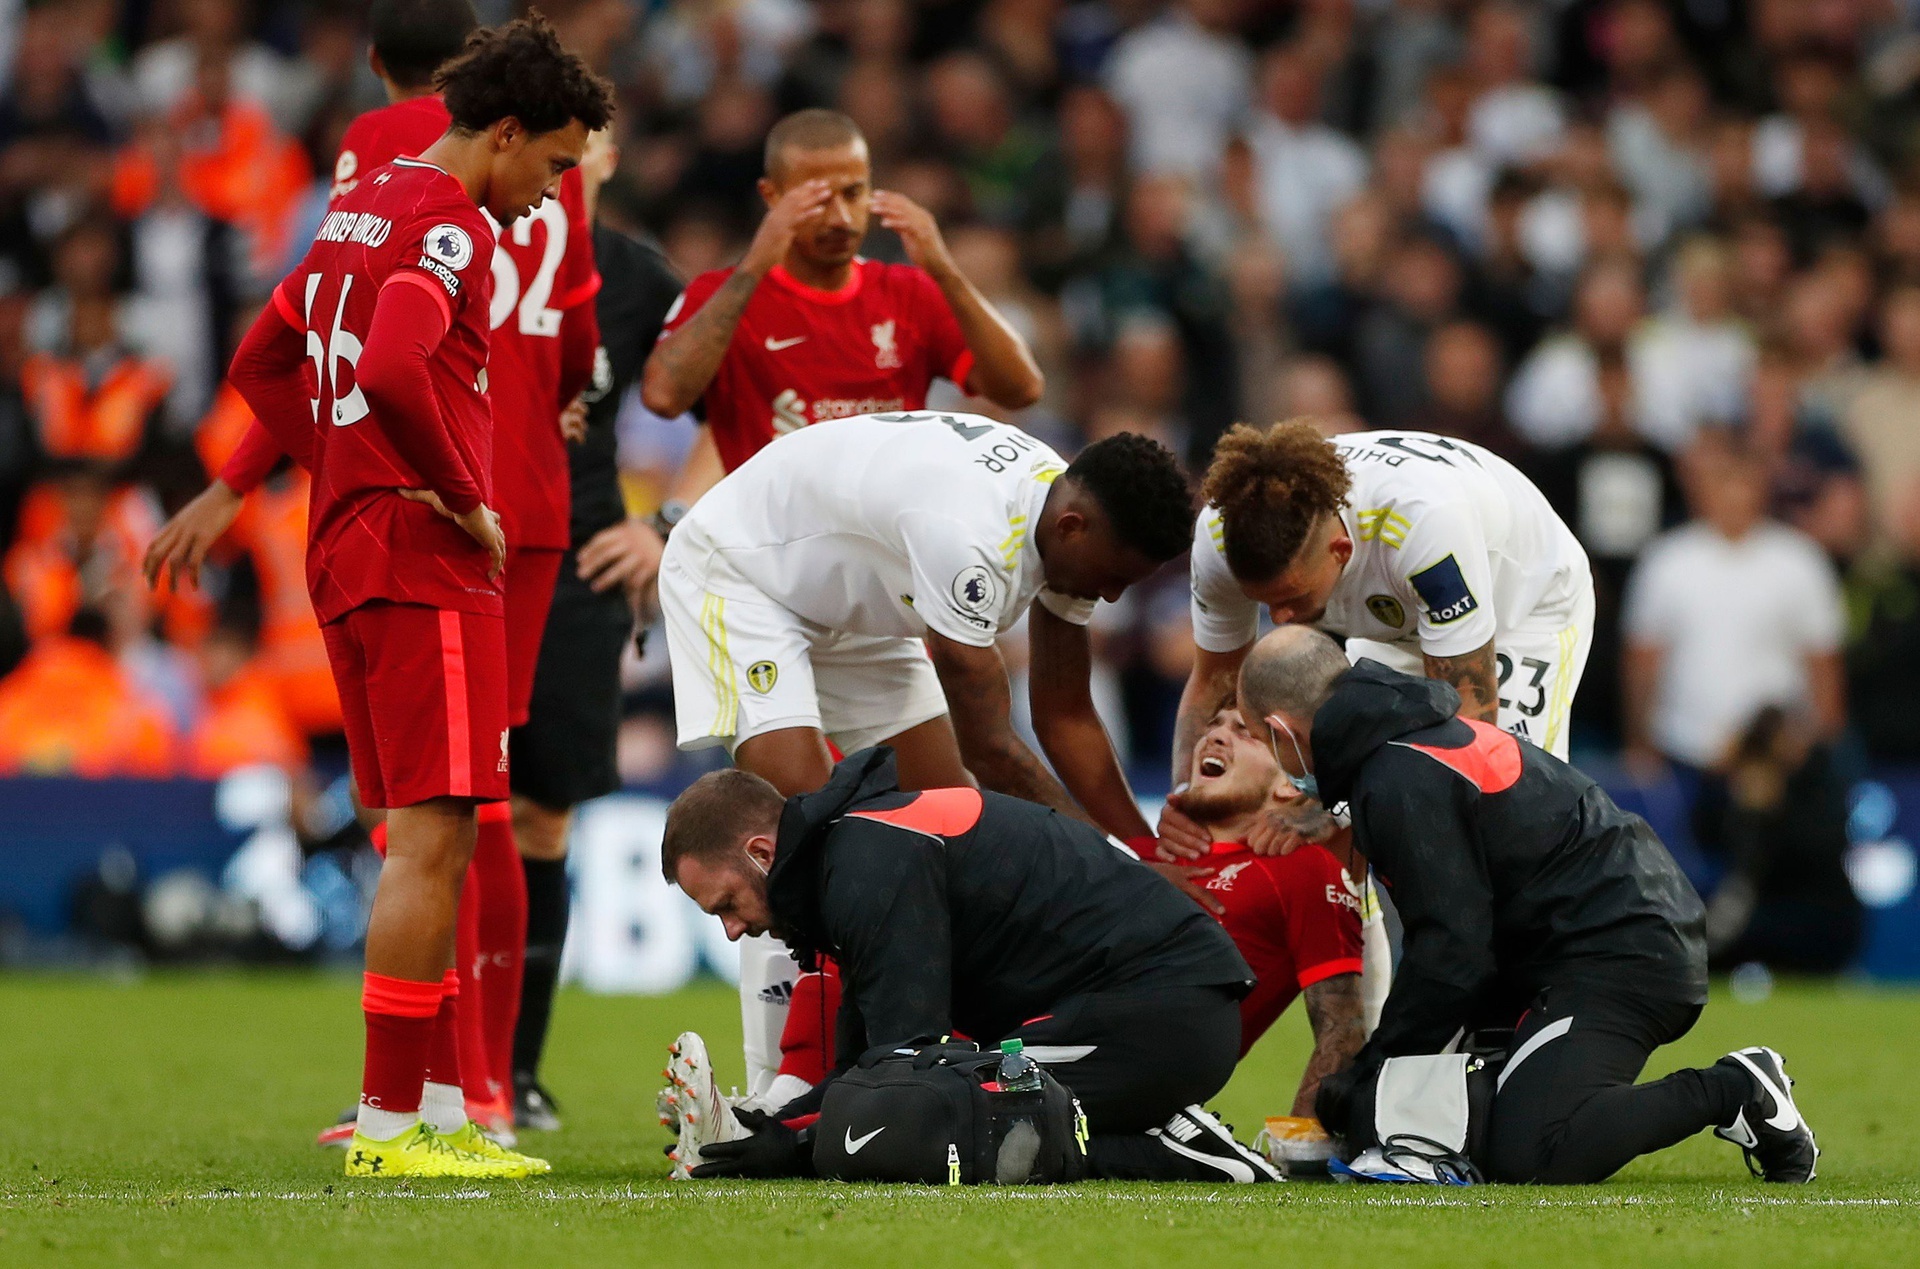 Đồng đội khóc vì chấn thương của sao trẻ Liverpool